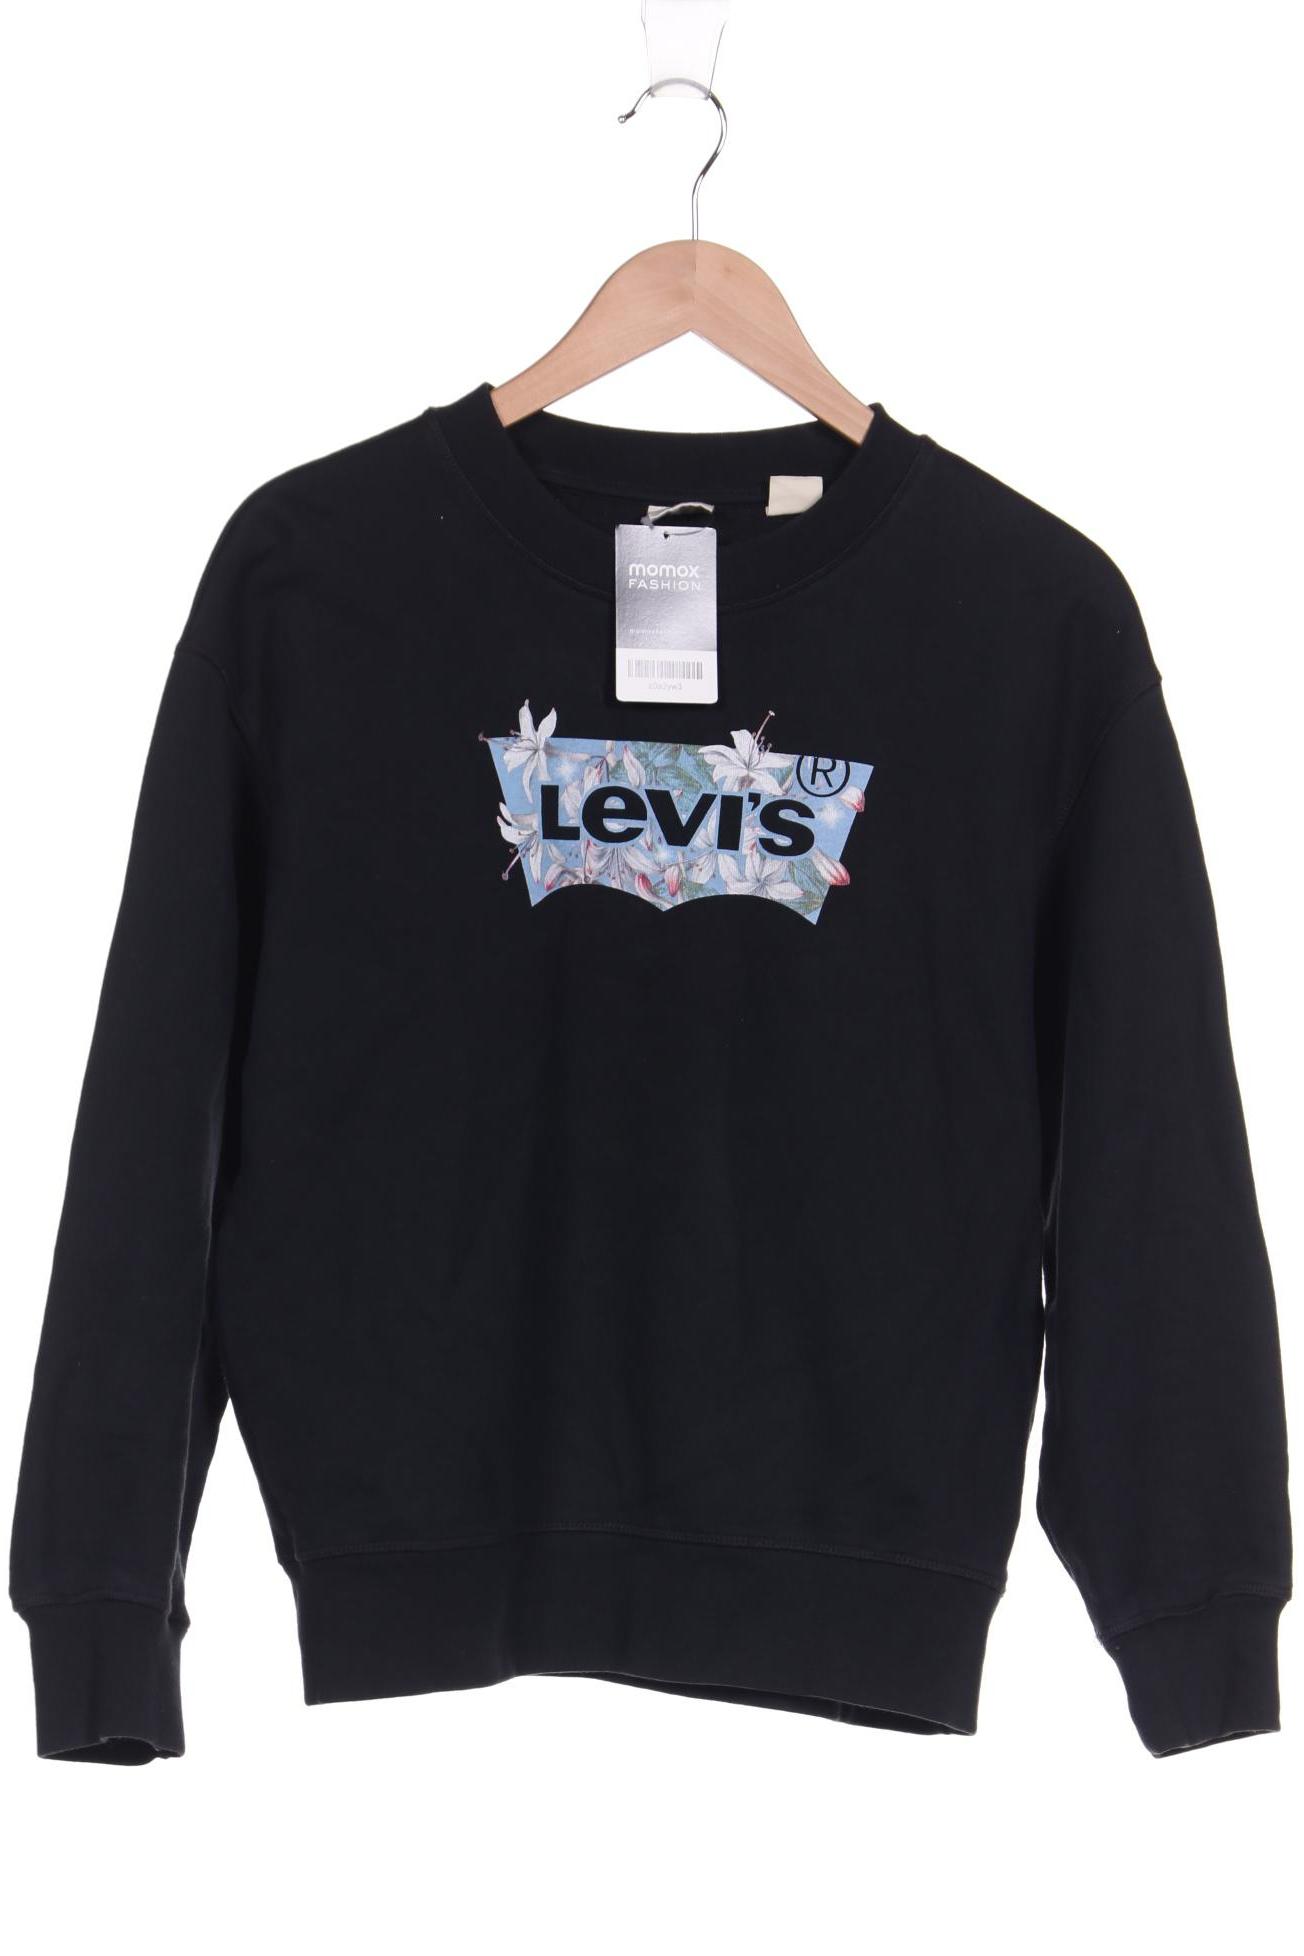 Levis Damen Sweatshirt, schwarz von Levis